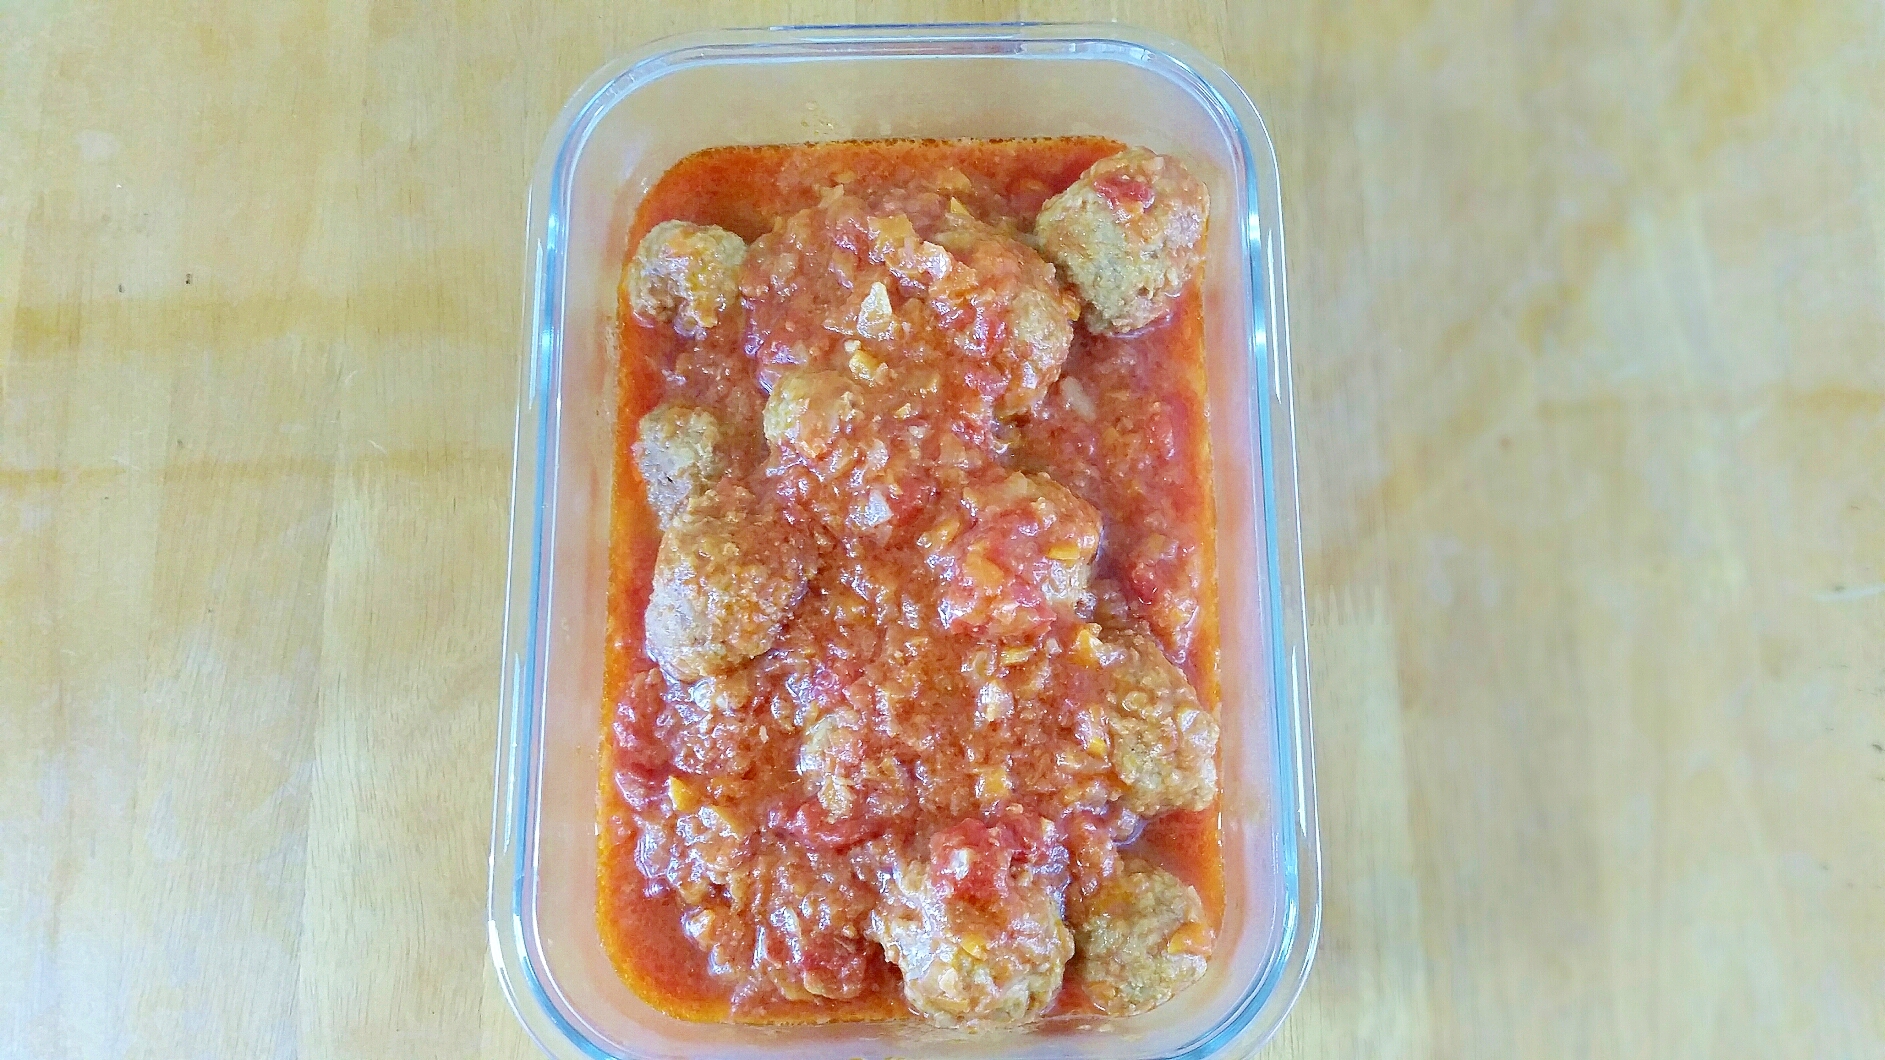 炊飯器で簡単◇スパイシー肉団子のトマト煮込み